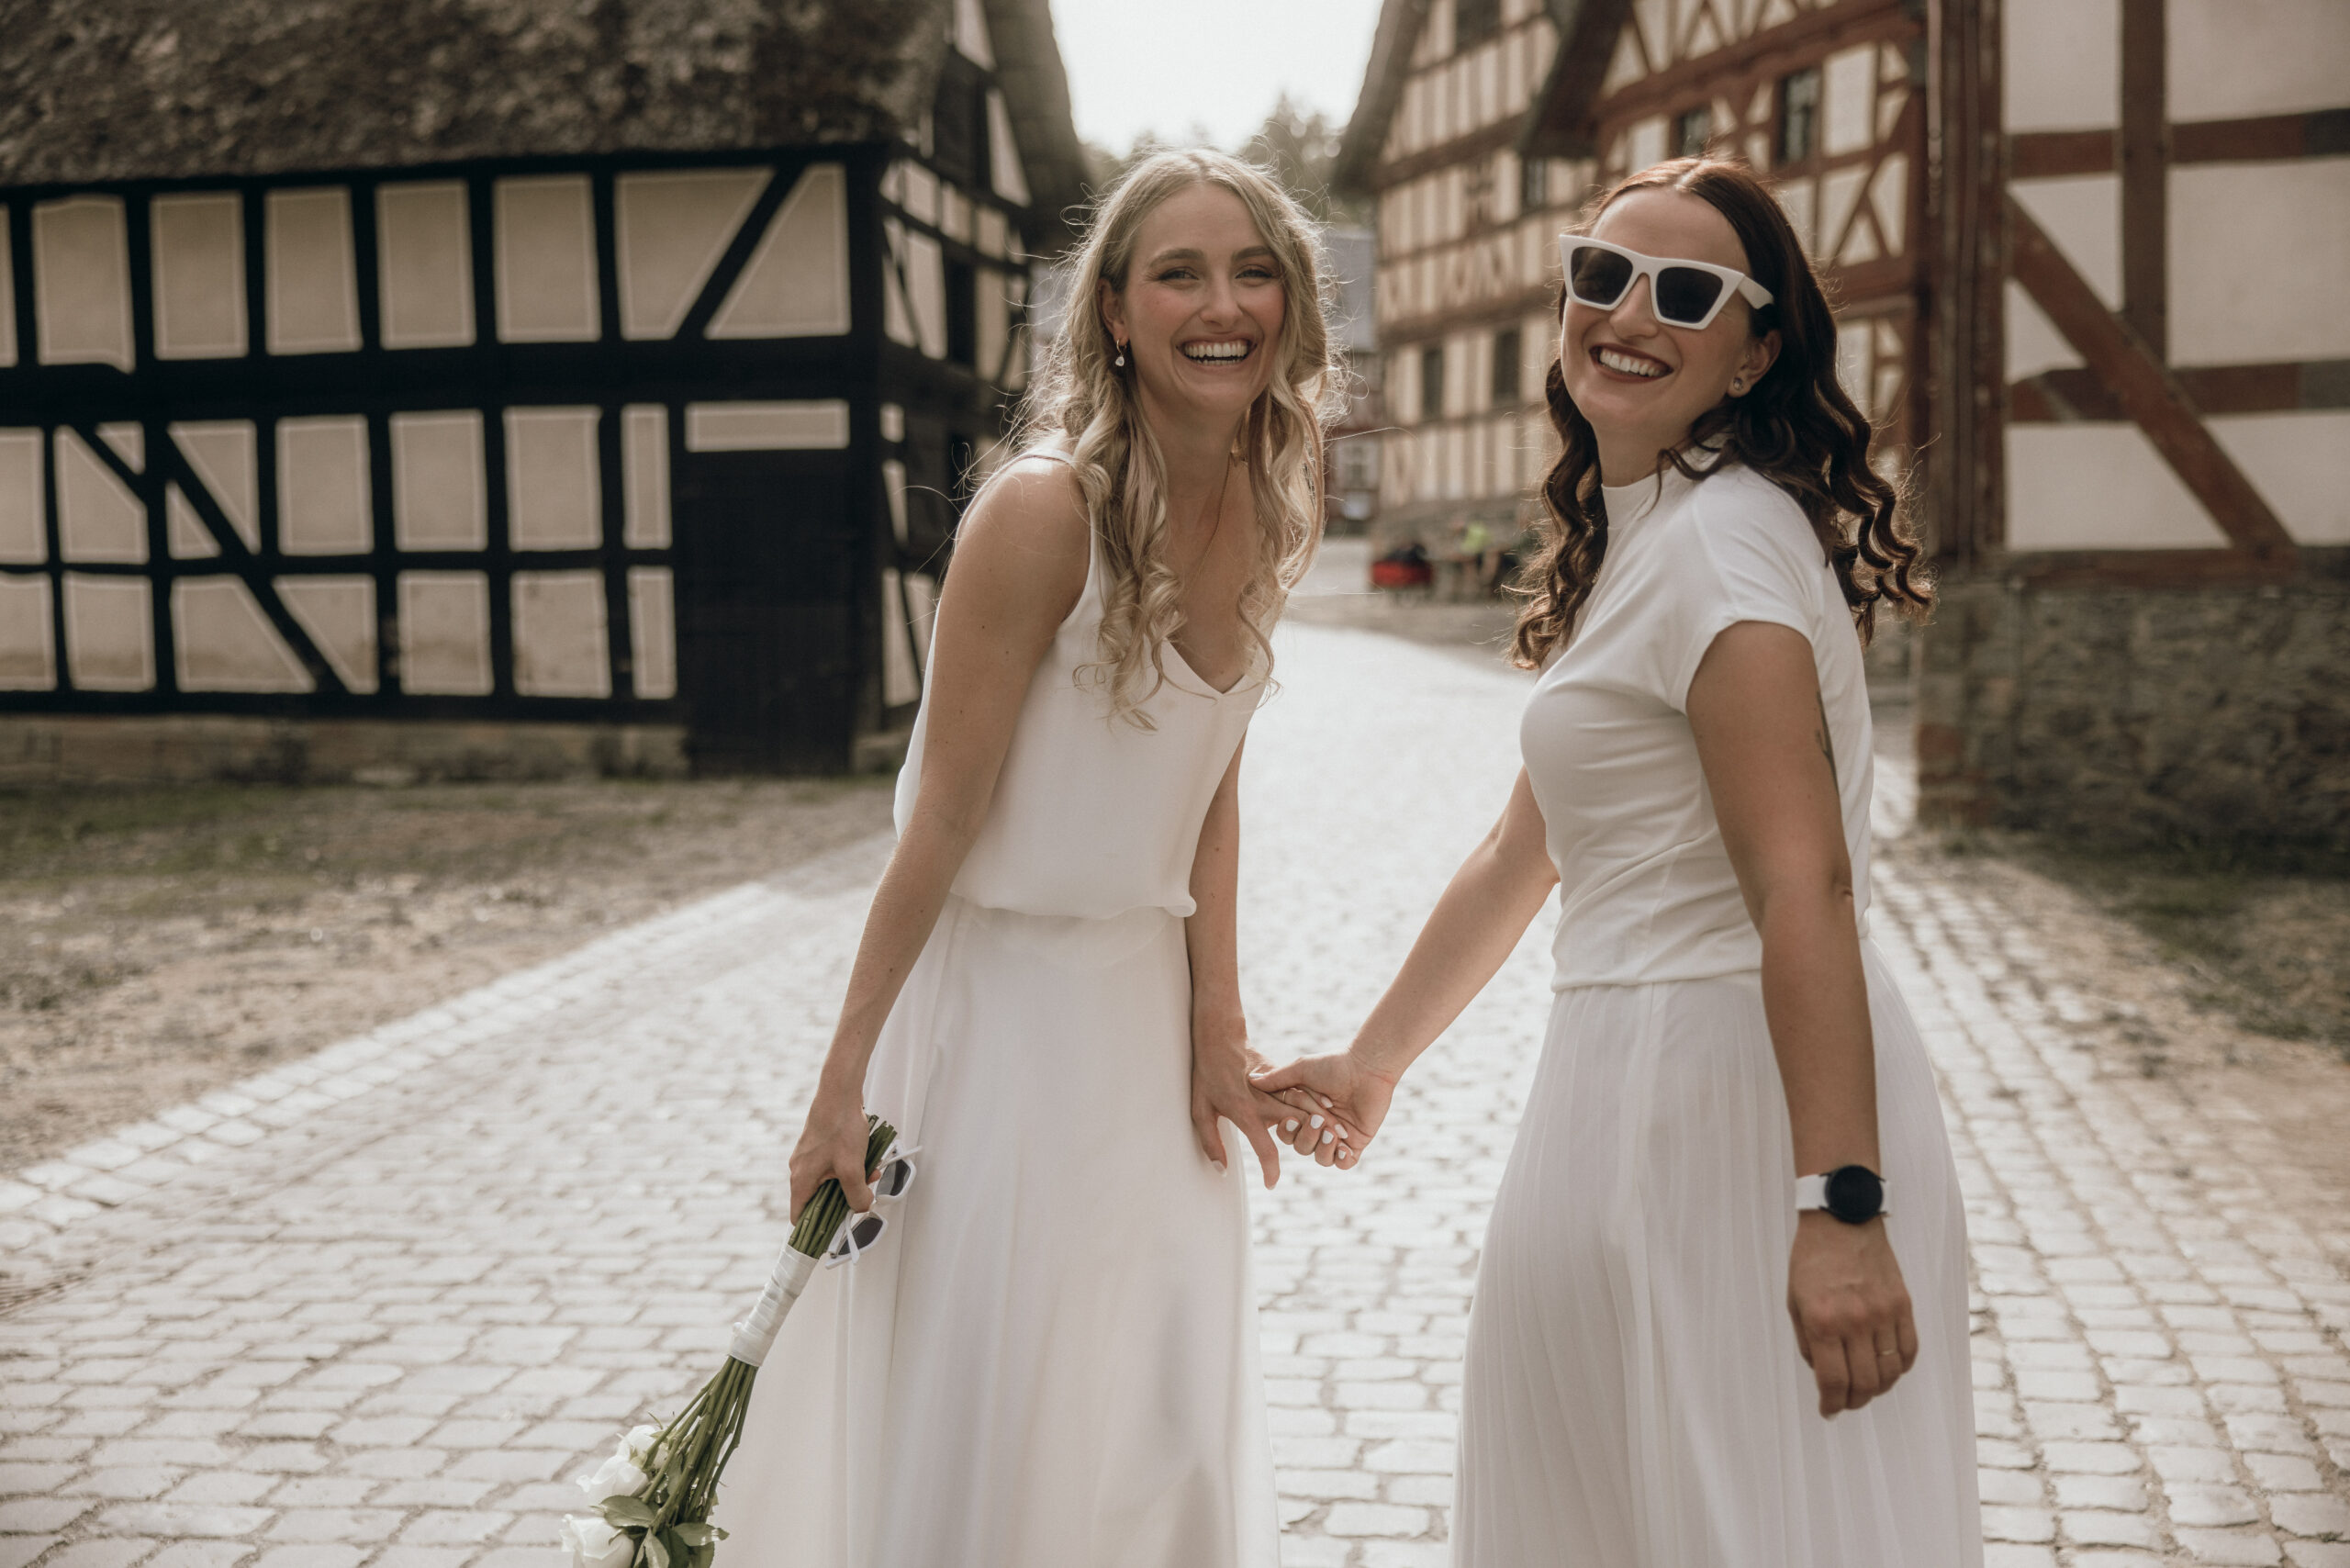 Glückliches Hochzeitspaar: zwei Frauen schauen in die Kamera und stehen vor Fachwerkhäusern.